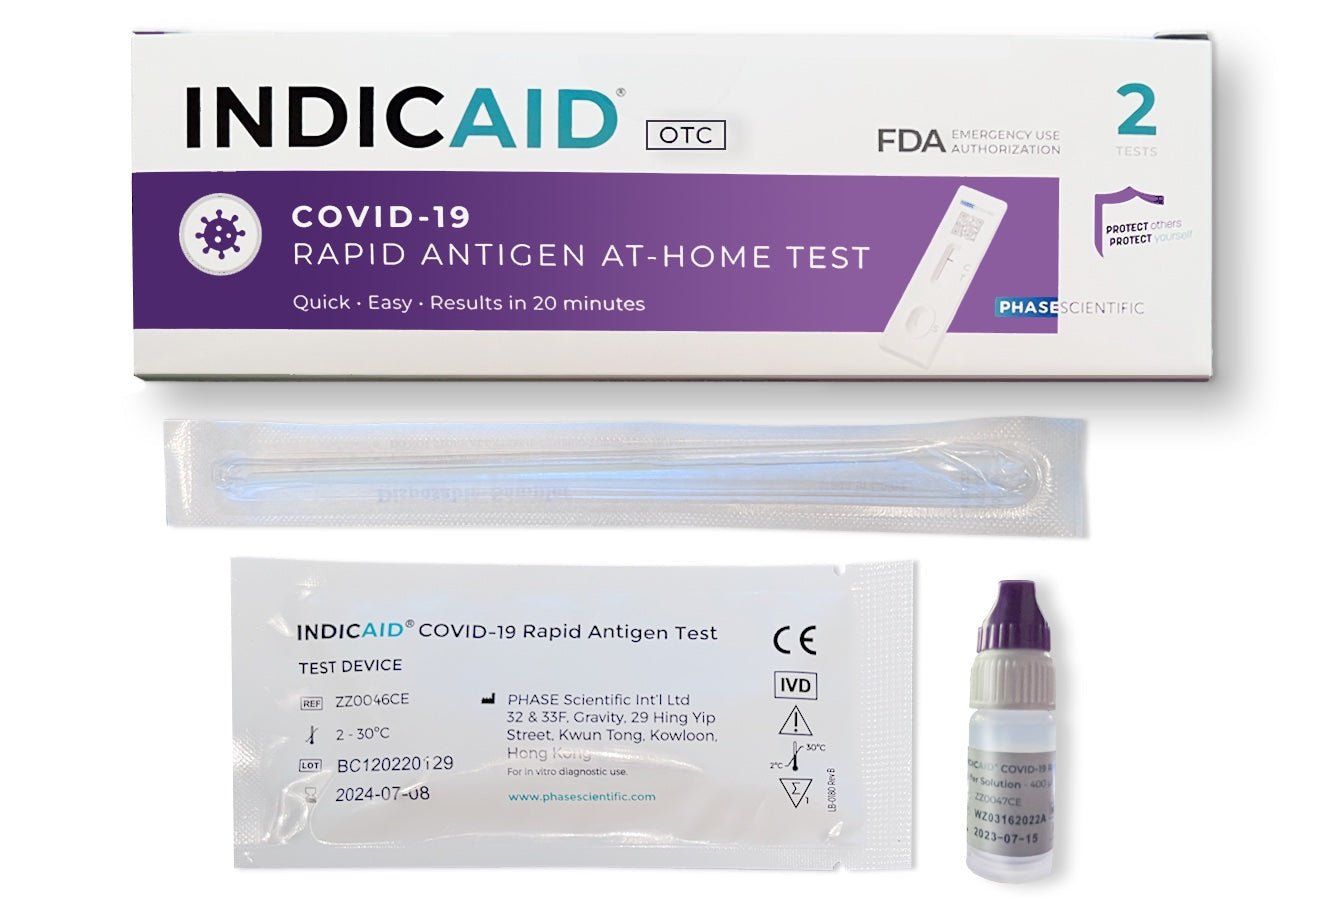 Citest Diagnostics Covid-19 Antigen Rapid Test Oral Fluid (AT889/21)  Profitest (Spucktest / Speicheltest) im 20er Pack. — Kreutz Health